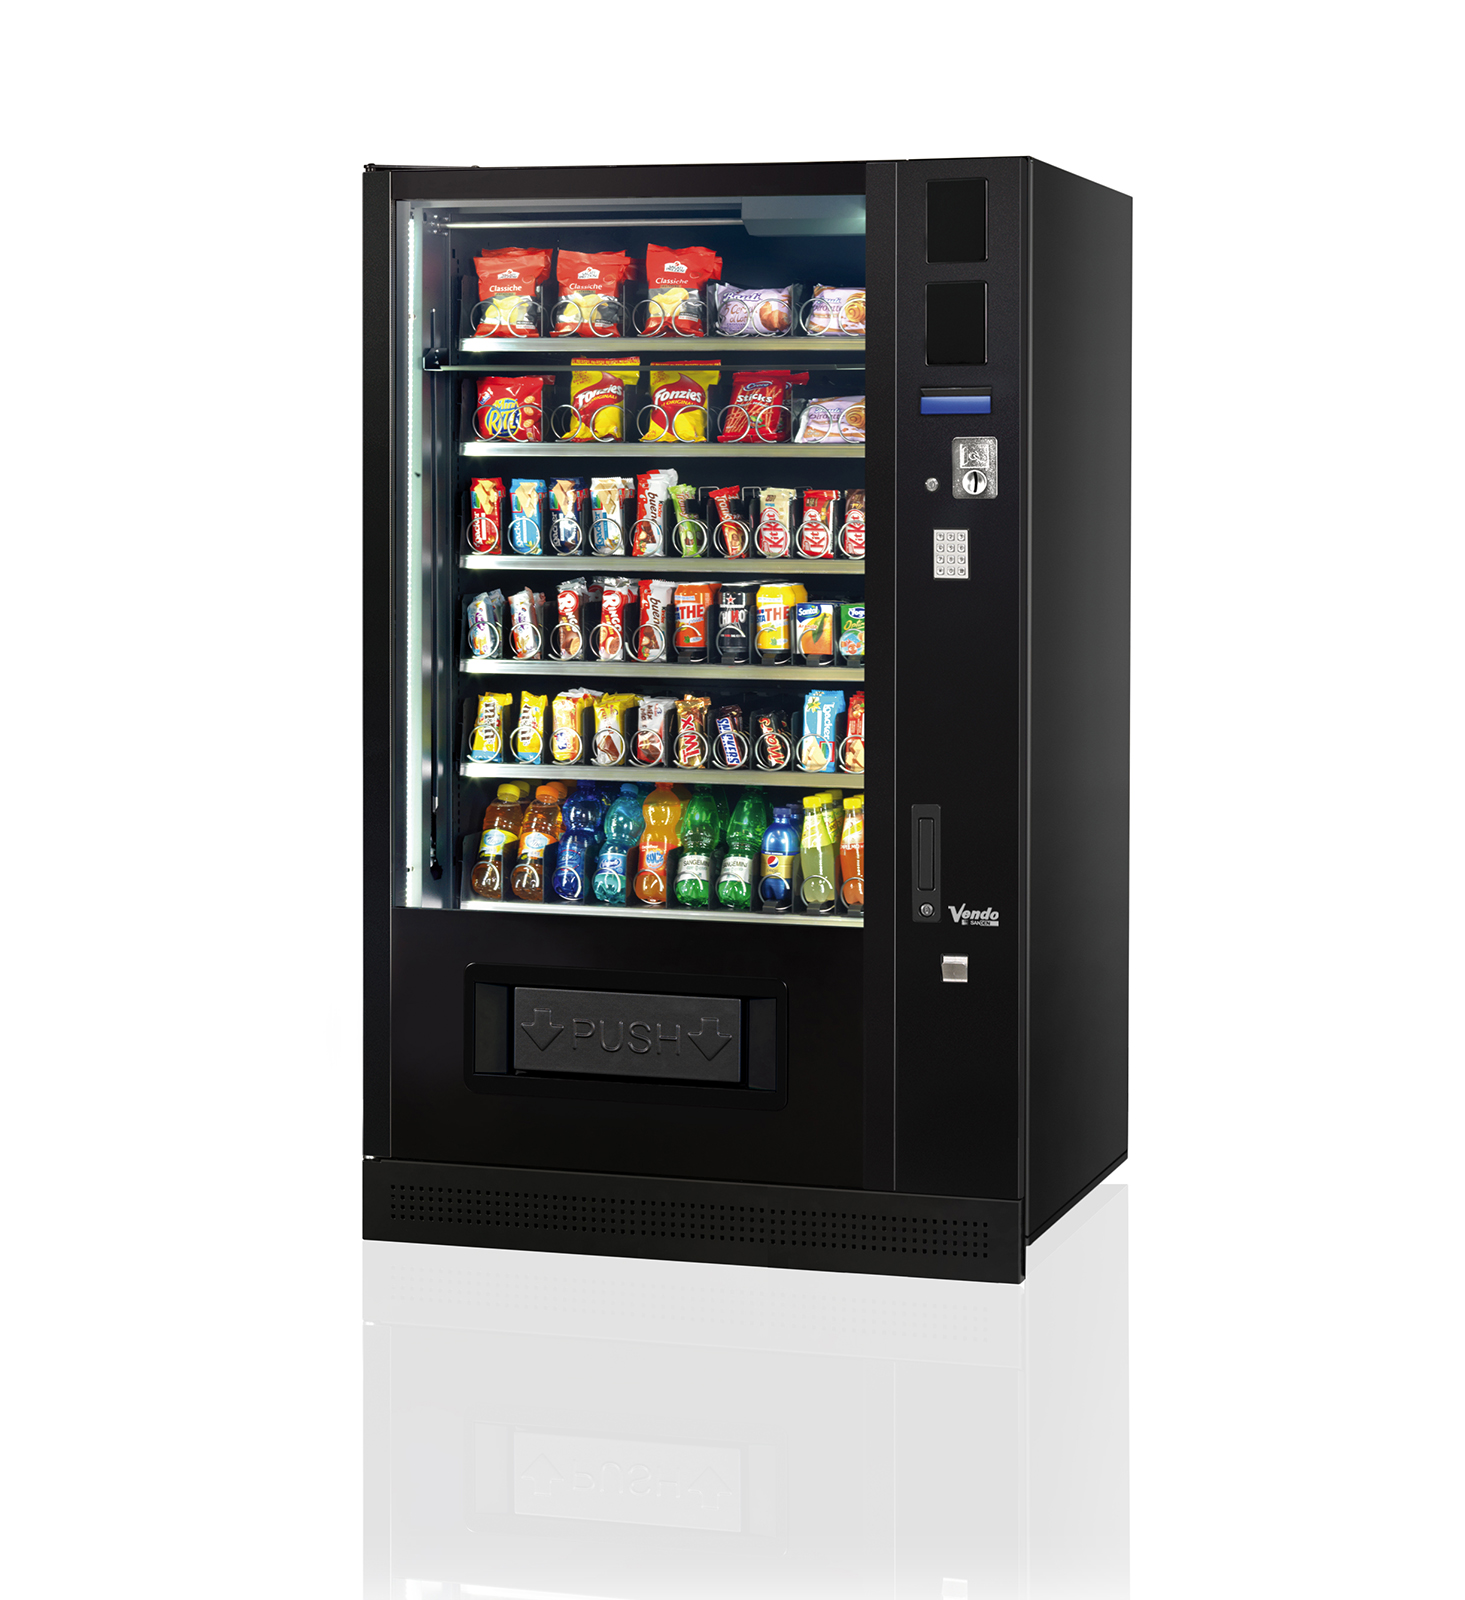 SandenVendo G-Snack Warenverkaufsautomat